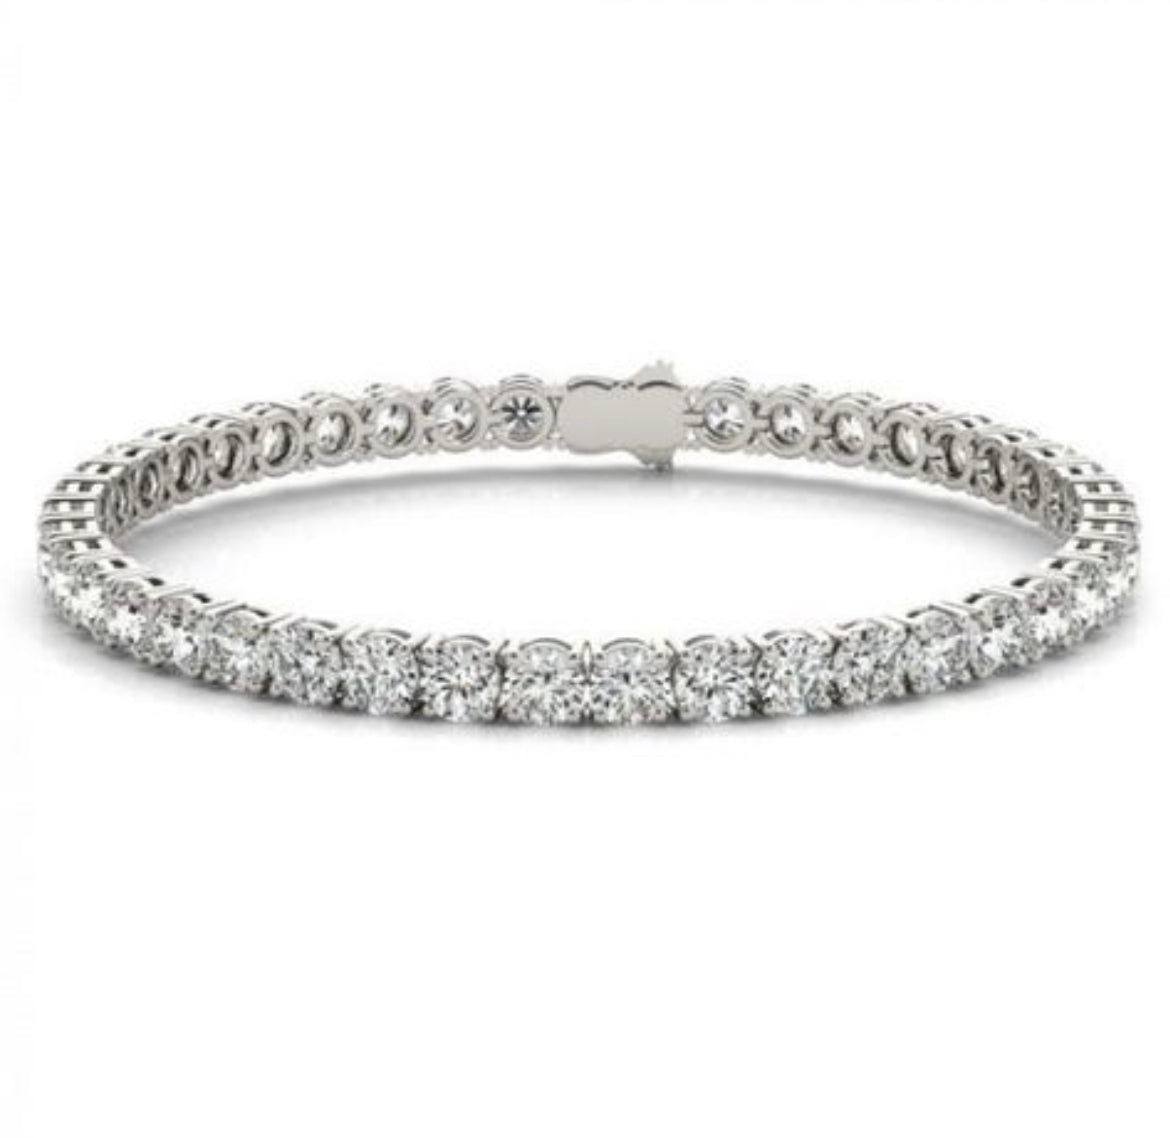 Diamond bracelet on a model's arm